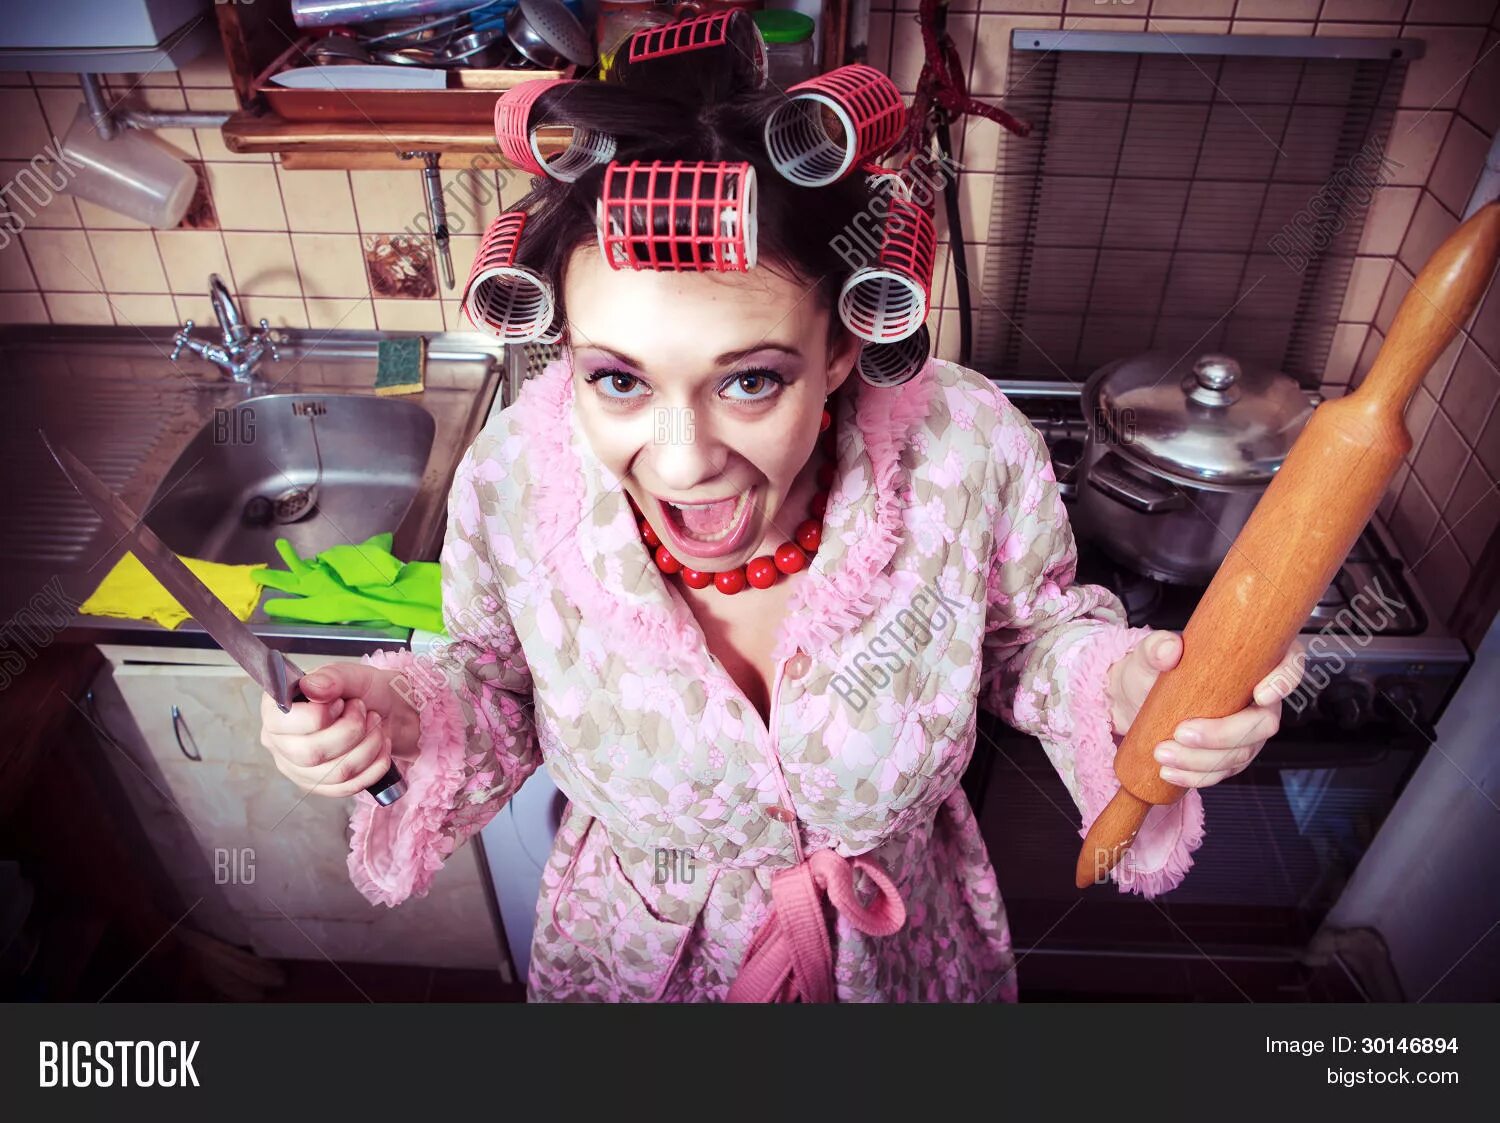 Глупая хозяйка. Женщина в бигудях и халате. Фотосессия на кухне с бигудями. Сумасшедшая женщина. Домохозяйка в бигудях и халате.